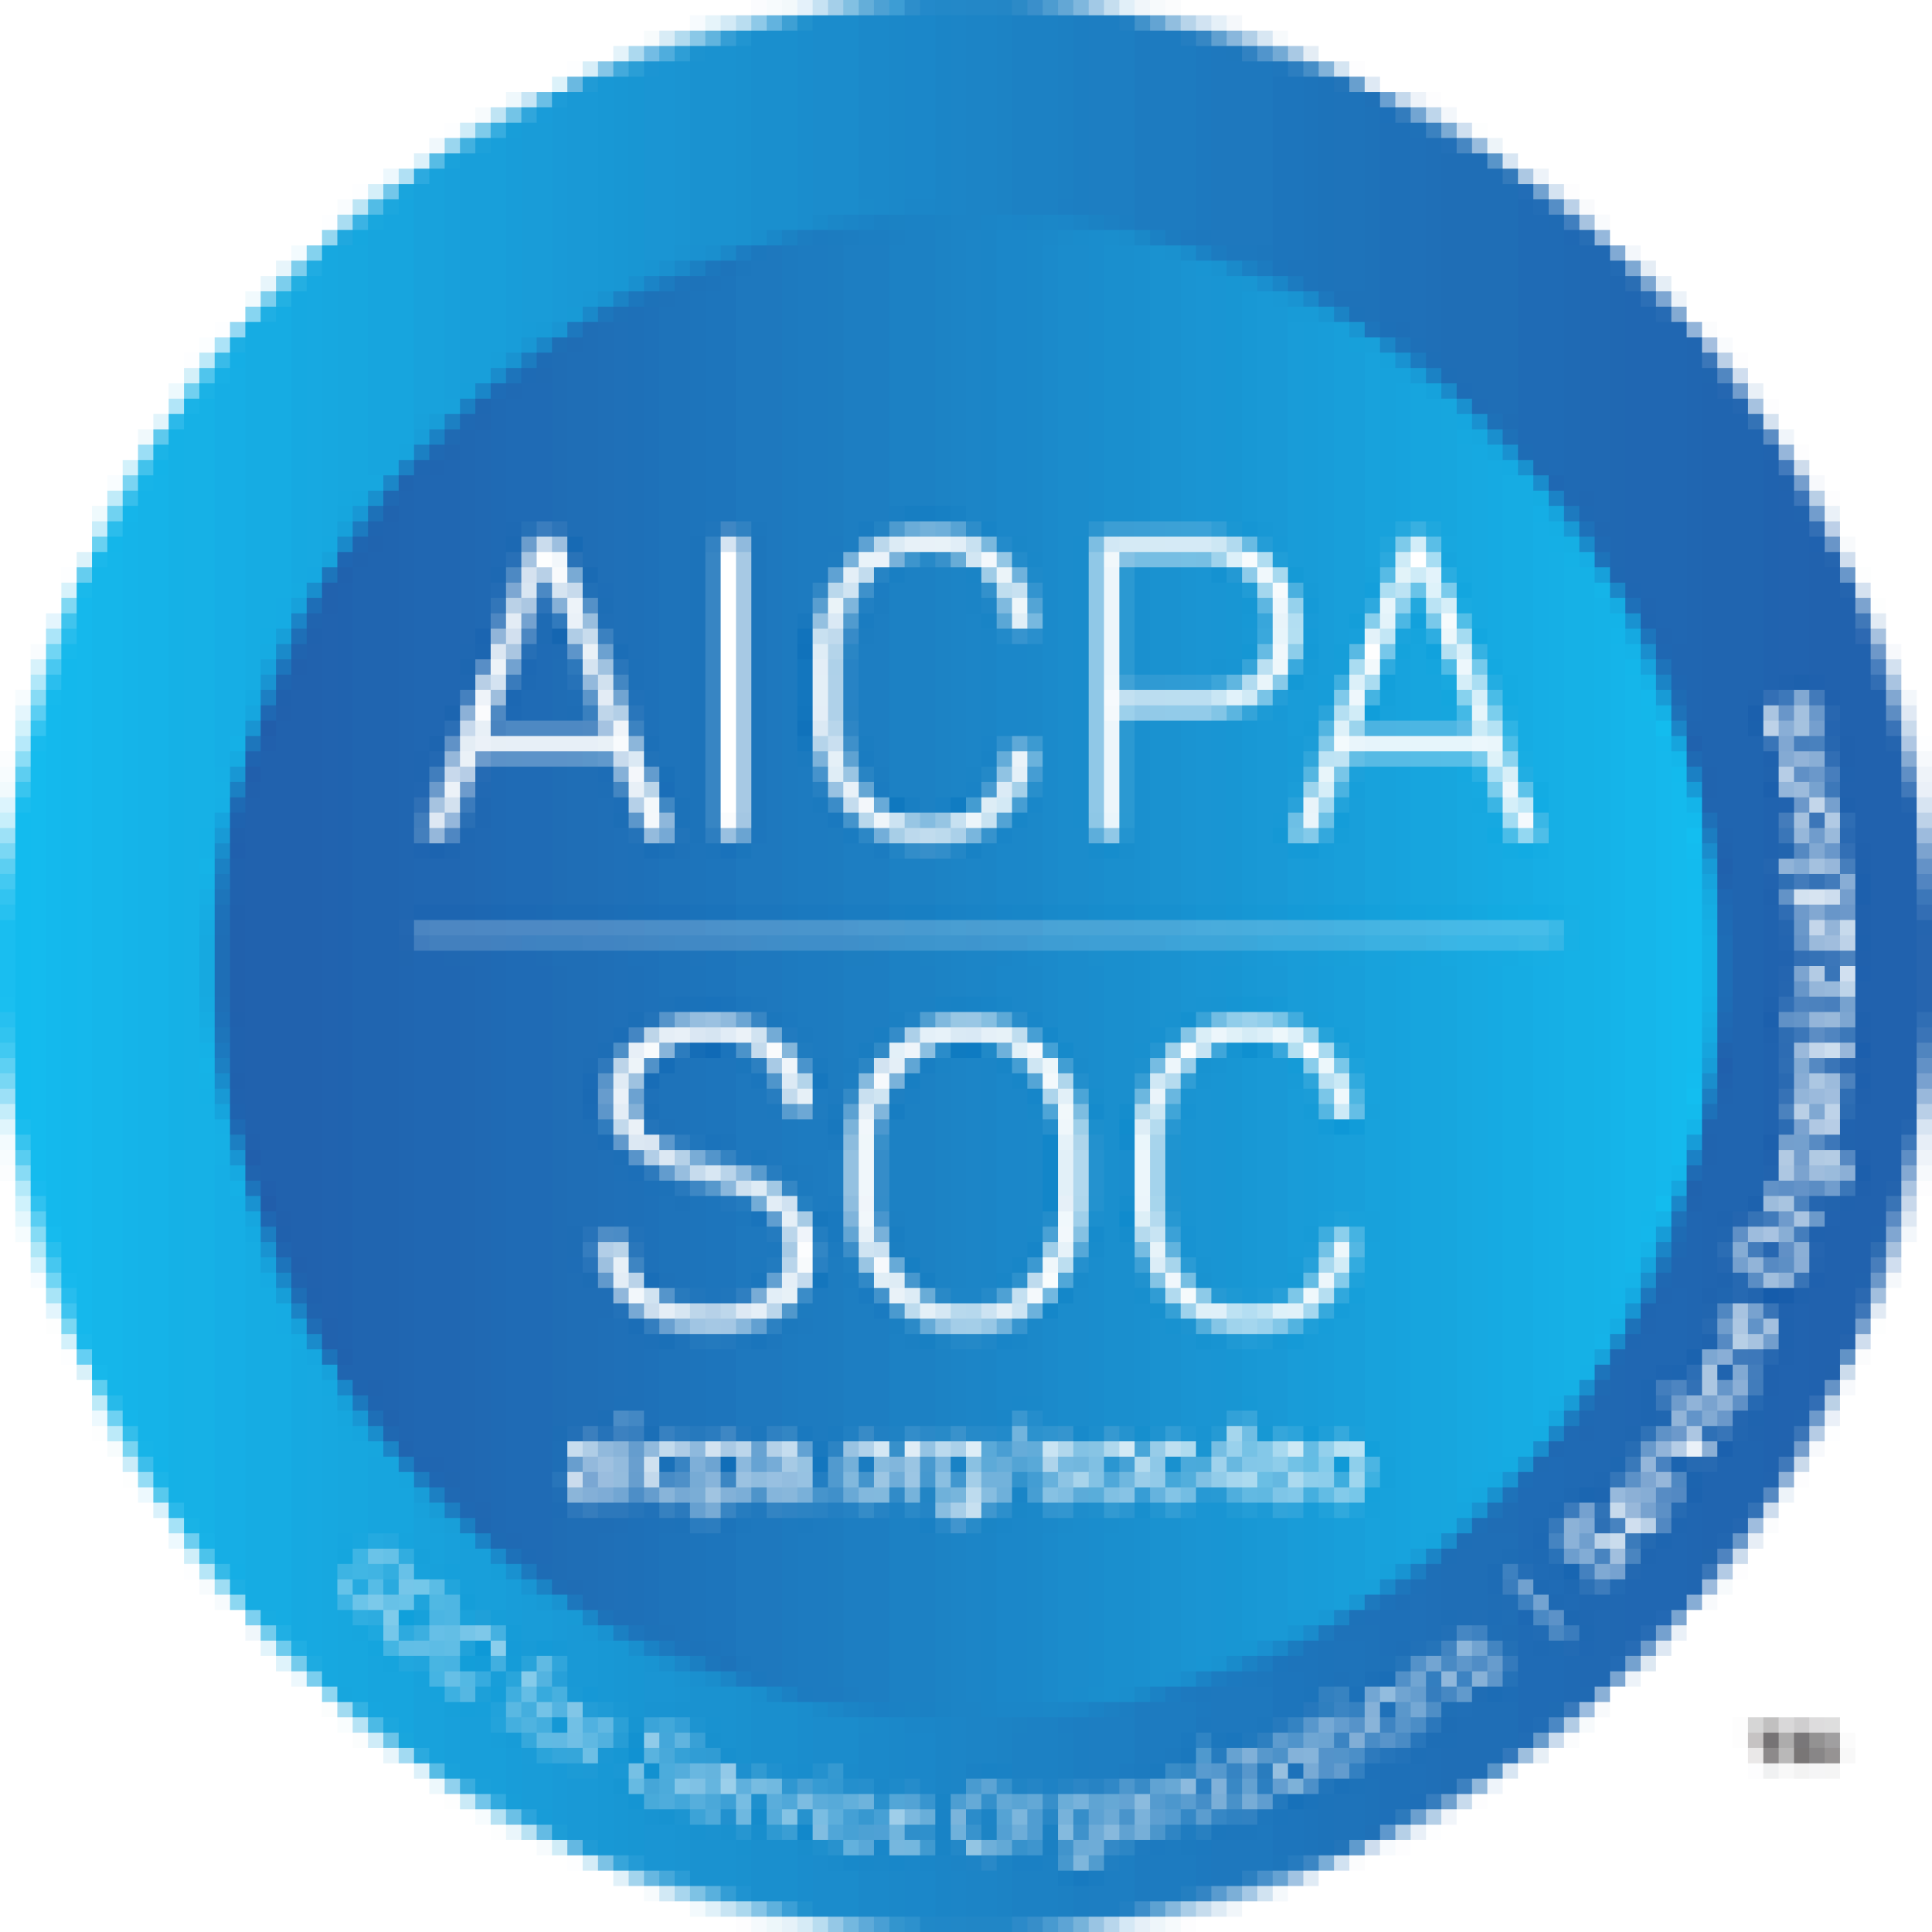 AICPA SOC logo in blue.